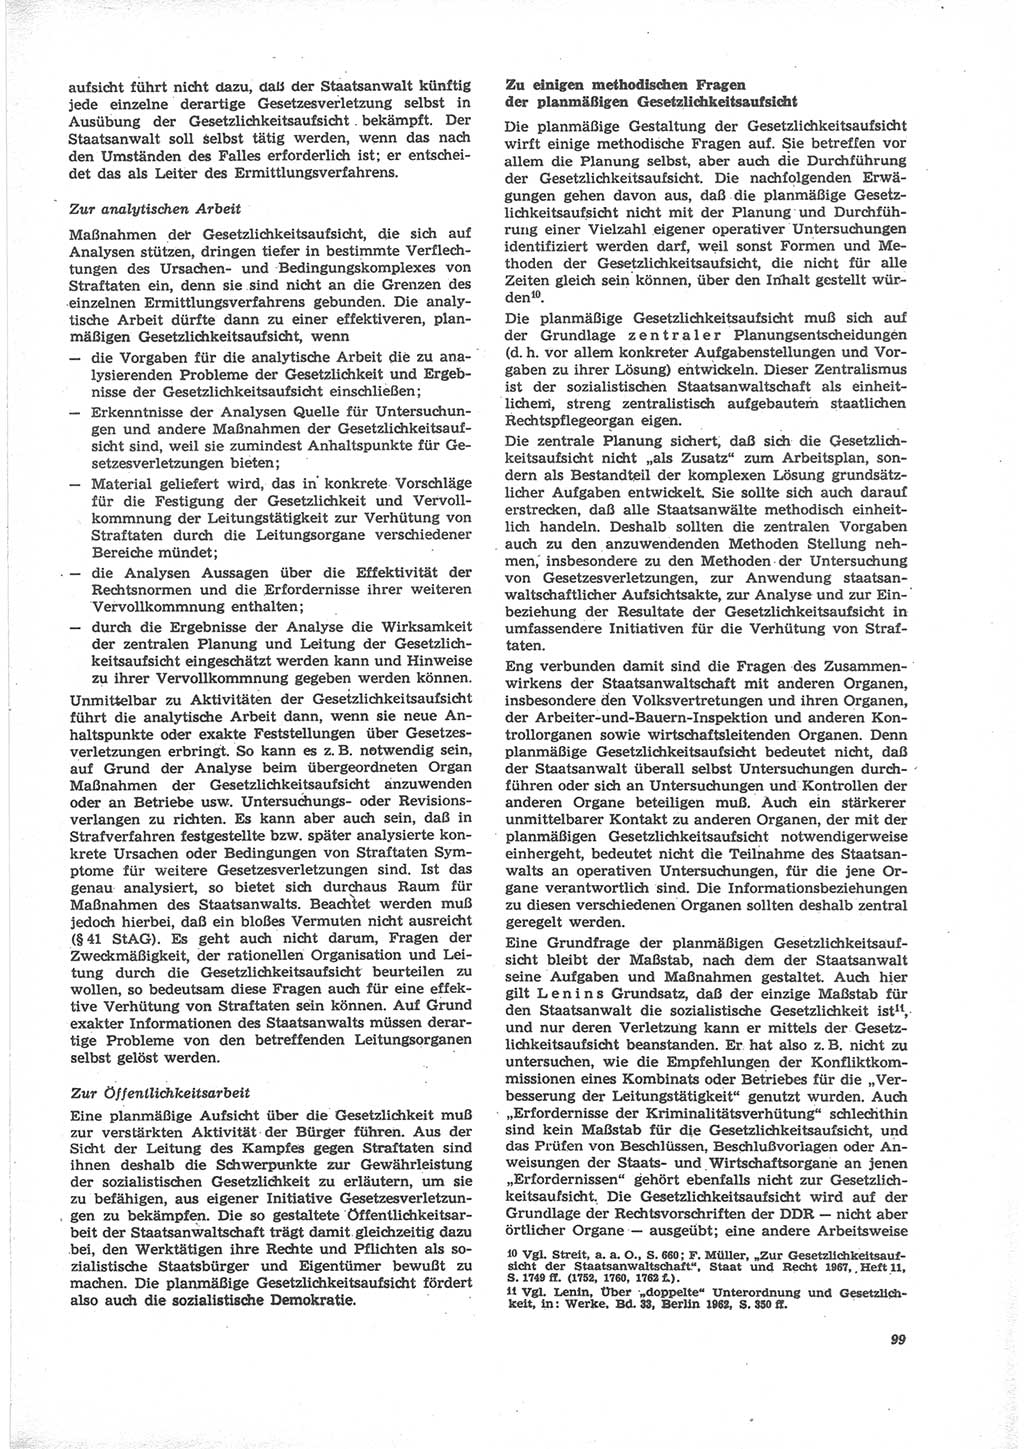 Neue Justiz (NJ), Zeitschrift für Recht und Rechtswissenschaft [Deutsche Demokratische Republik (DDR)], 24. Jahrgang 1970, Seite 99 (NJ DDR 1970, S. 99)